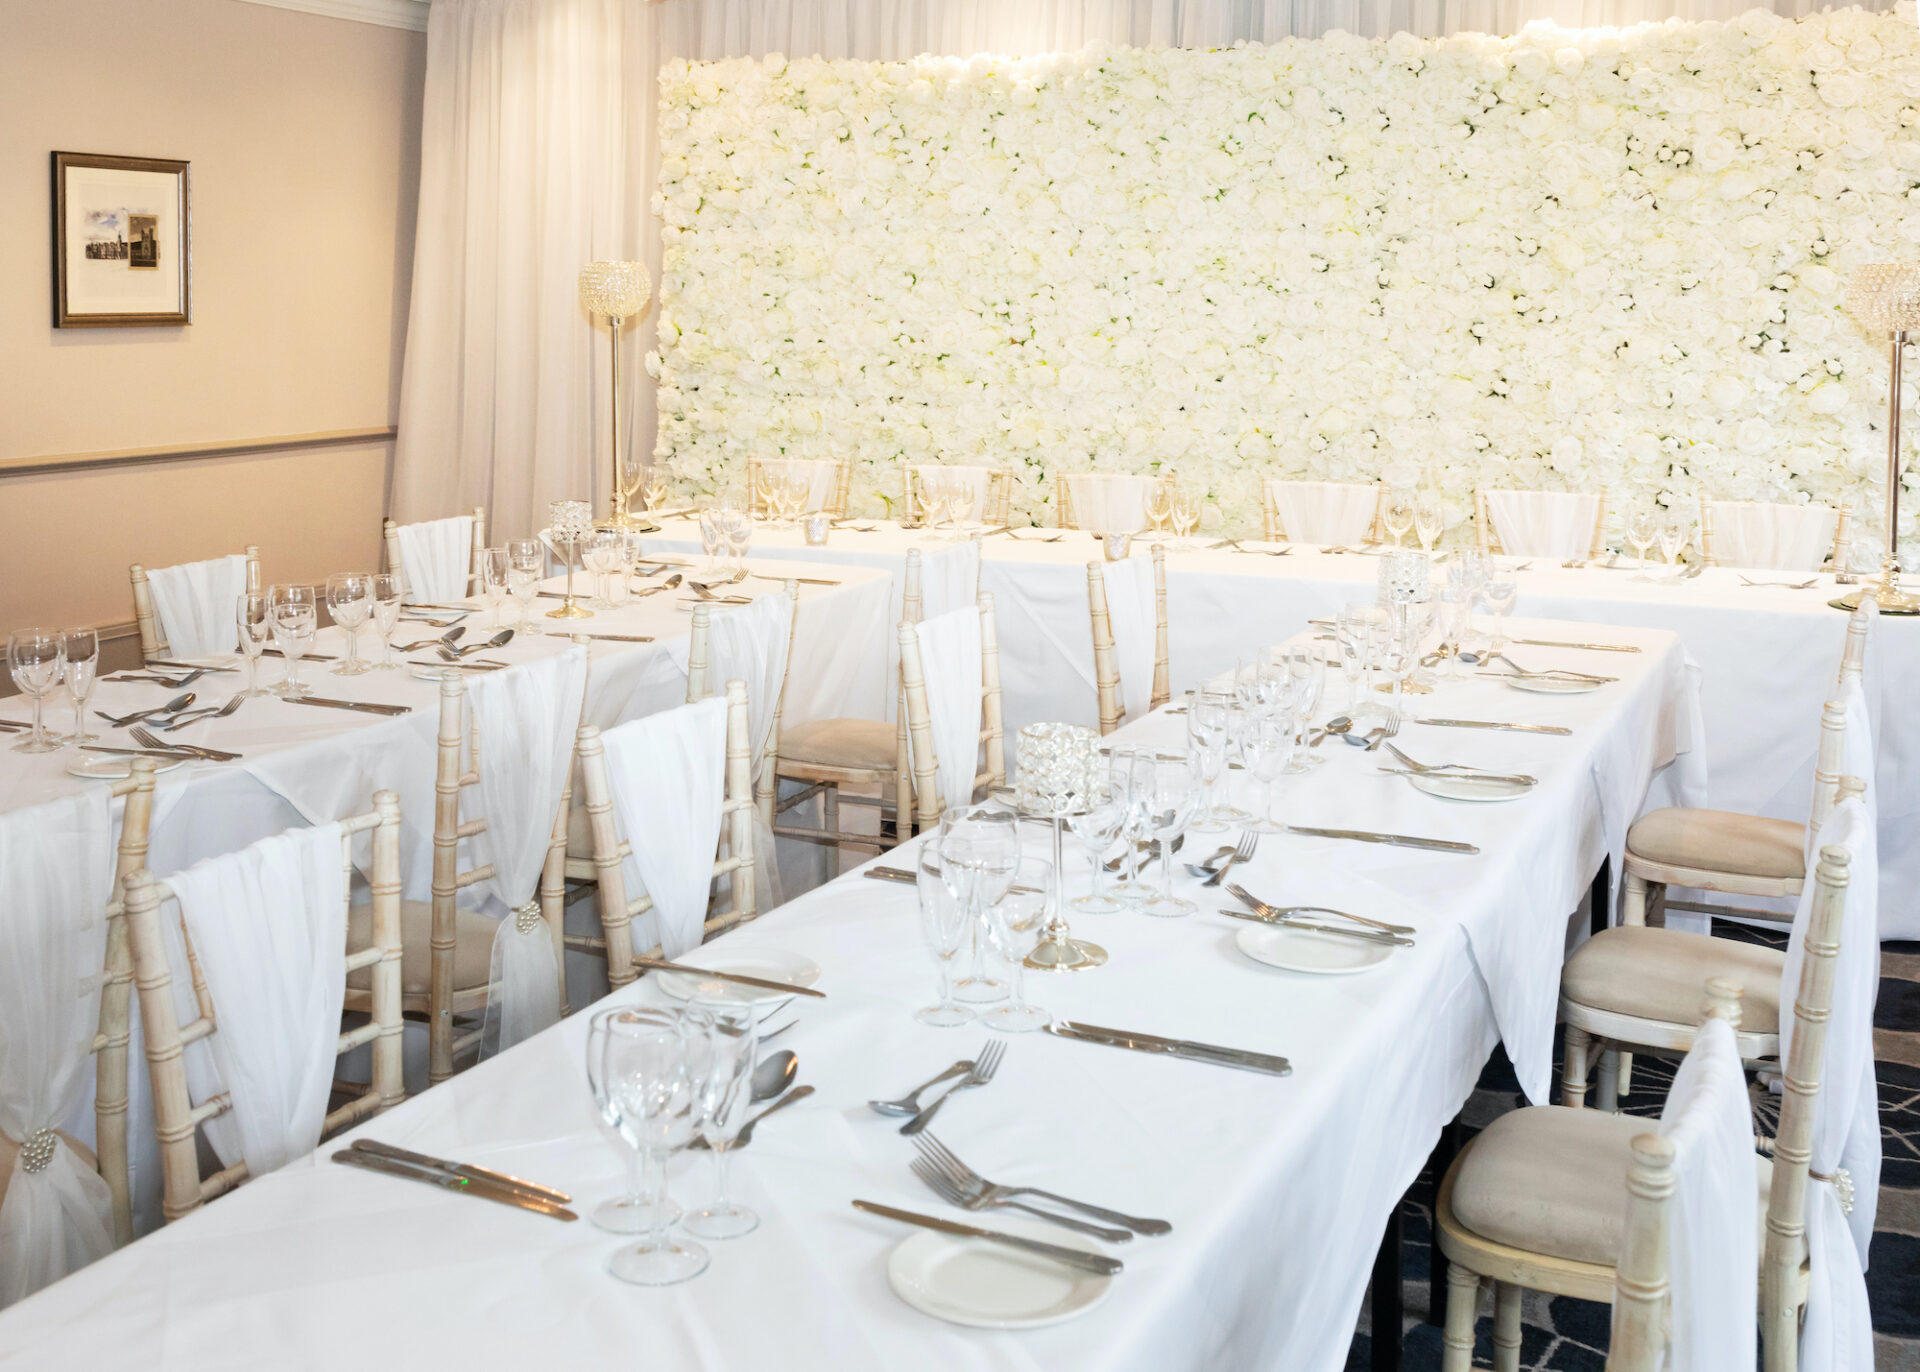 Castle Hotel Windsor weddings set up including tables